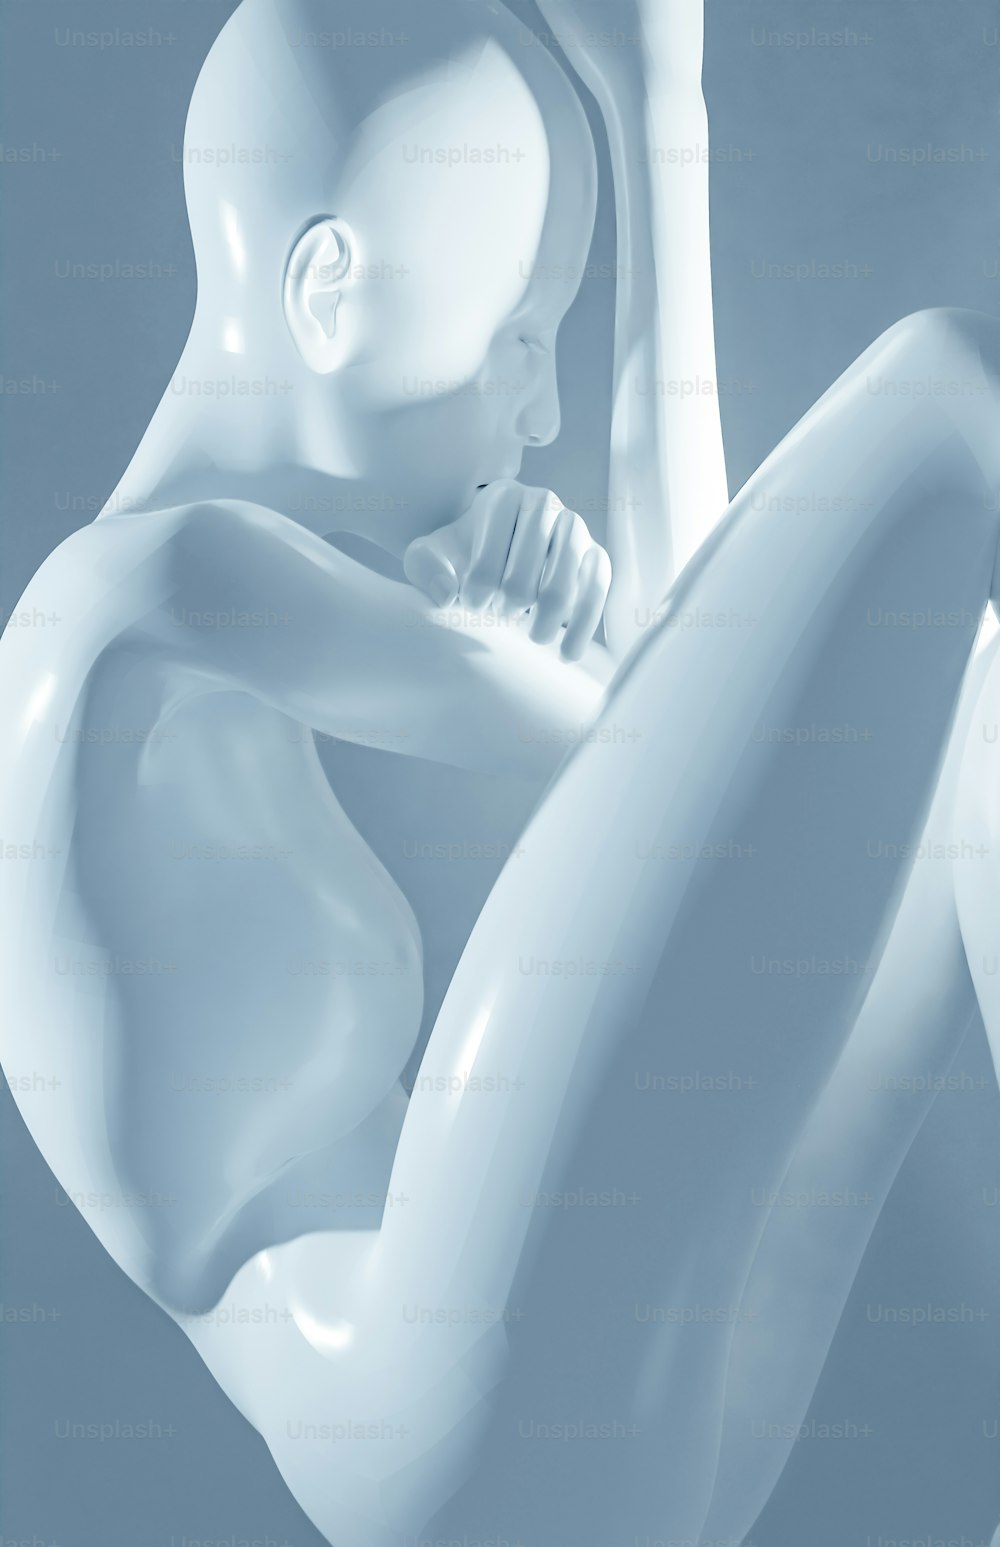 eine weiße Skulptur einer Person, die eine Zahnbürste hält